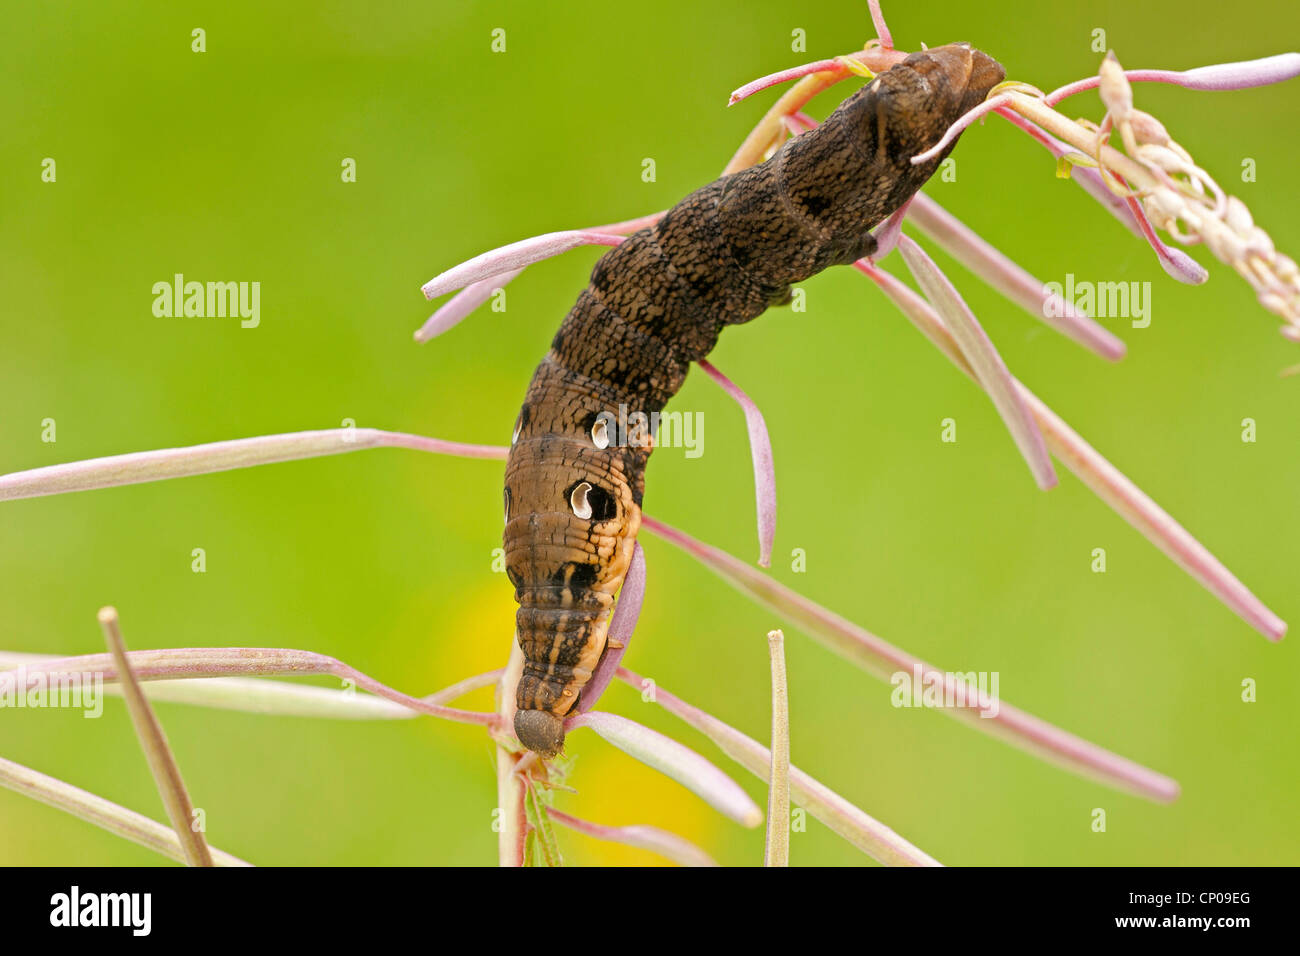 (Deilephila elpenor sphynx éléphant), Caterpillar sur une pousse de willow-herb Epilobium angustifolium, Allemagne, Rhénanie-Palatinat Banque D'Images